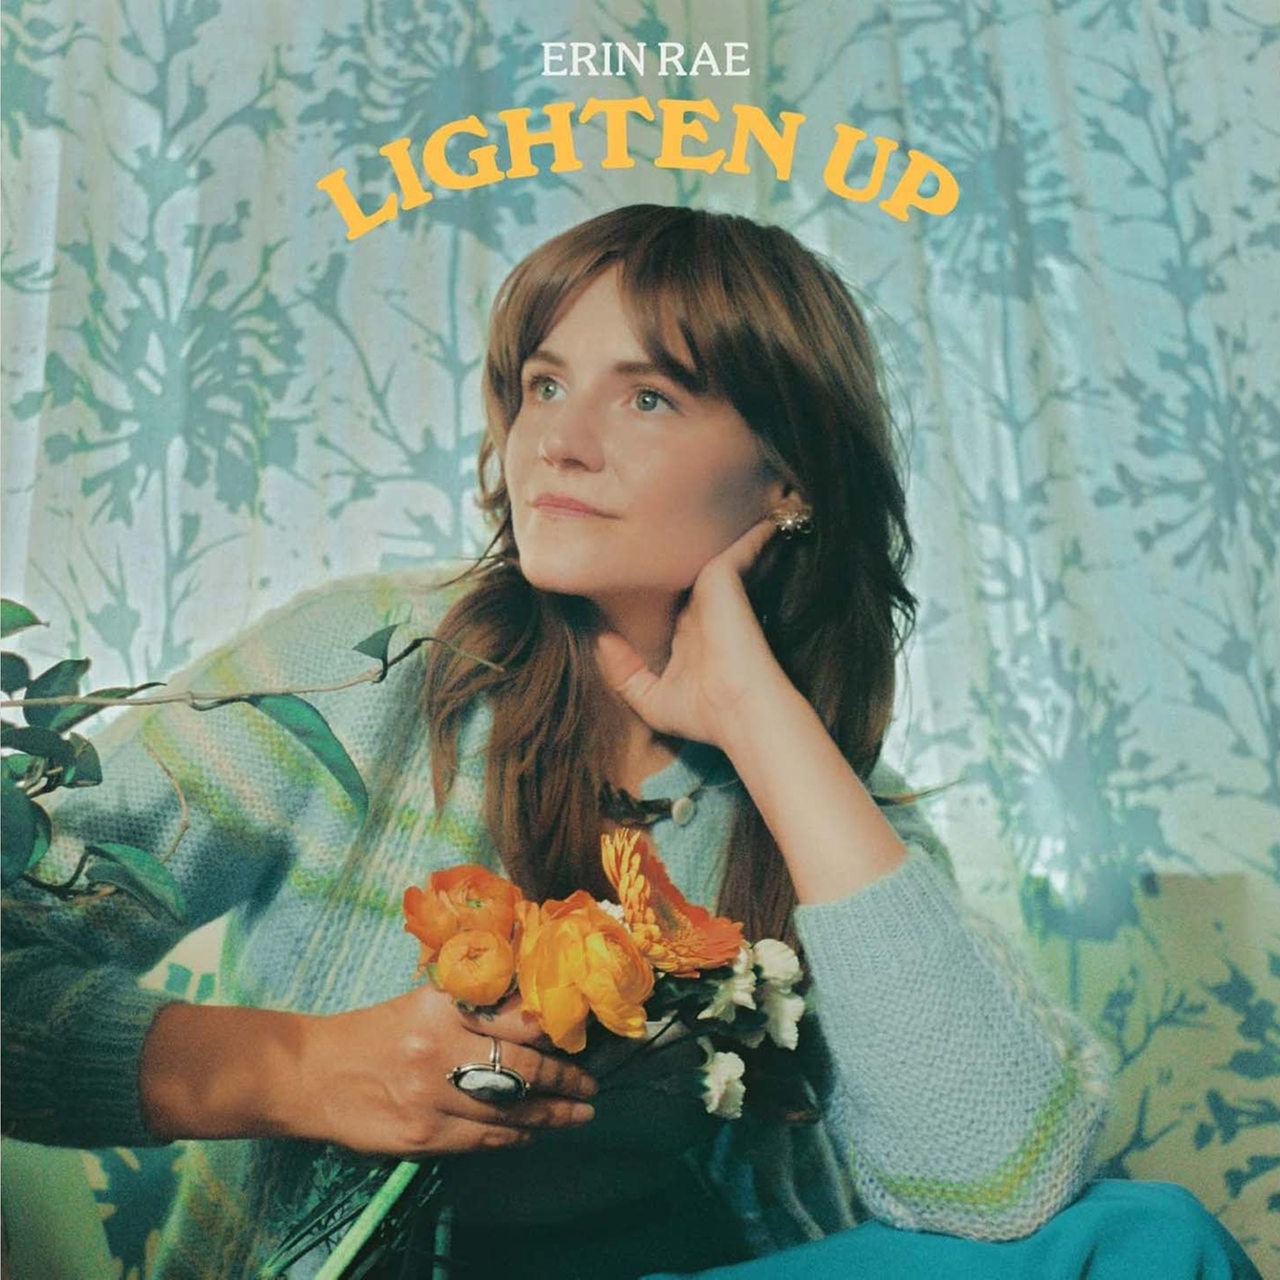 Albumcover von Erin Rae "Lighten Up"